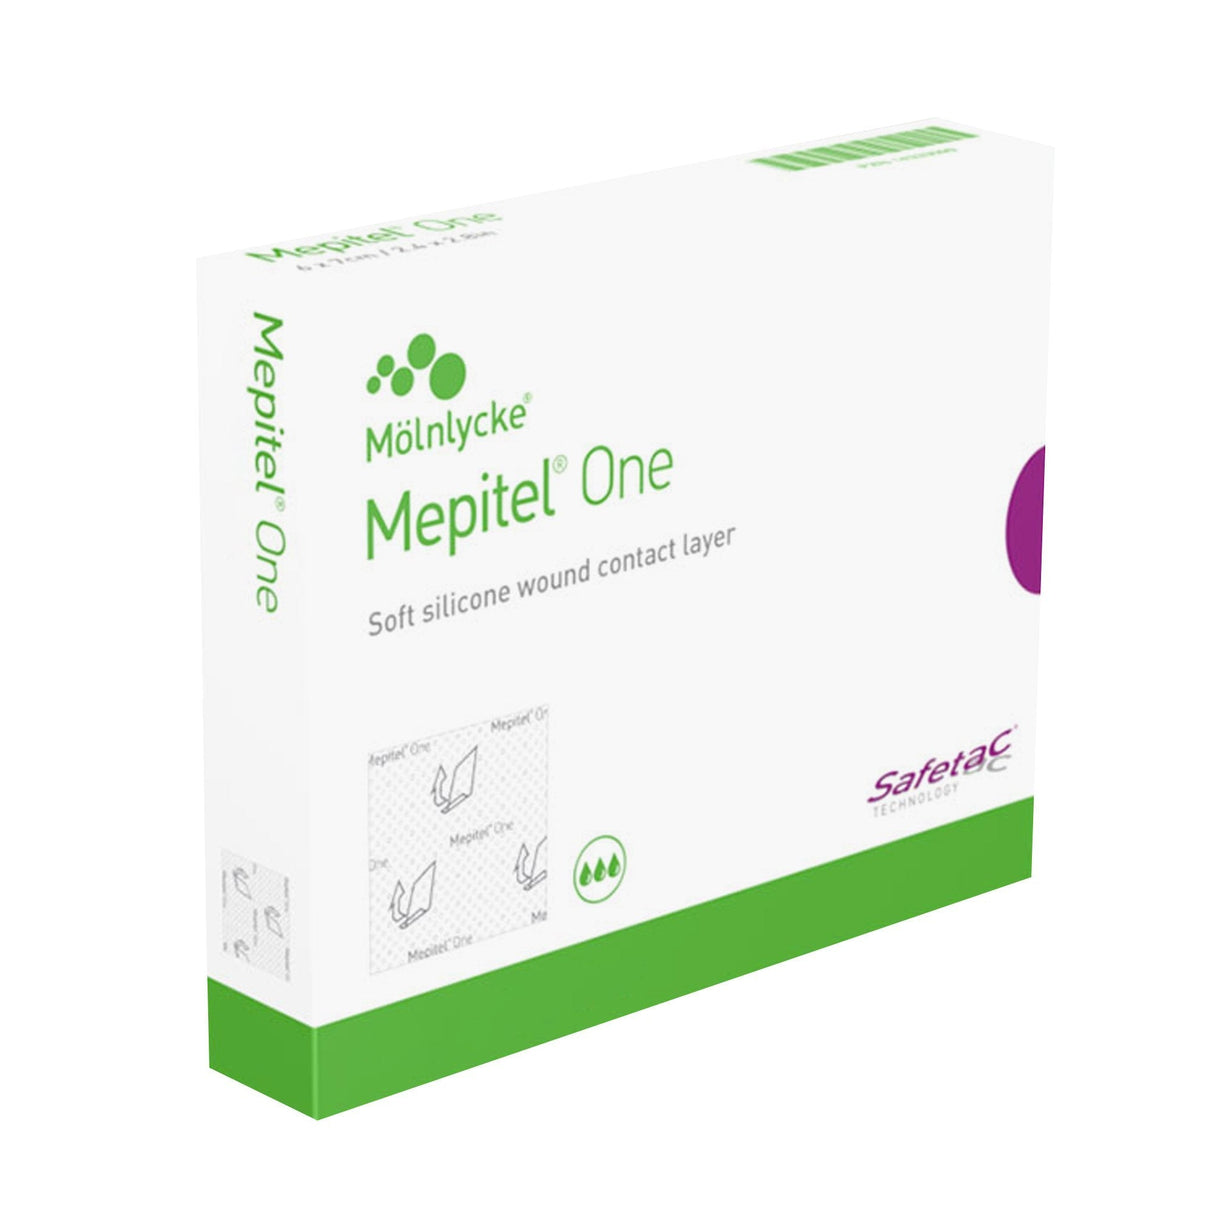 Mepitel® One 6.8" x 10" Dressing - Box of 5